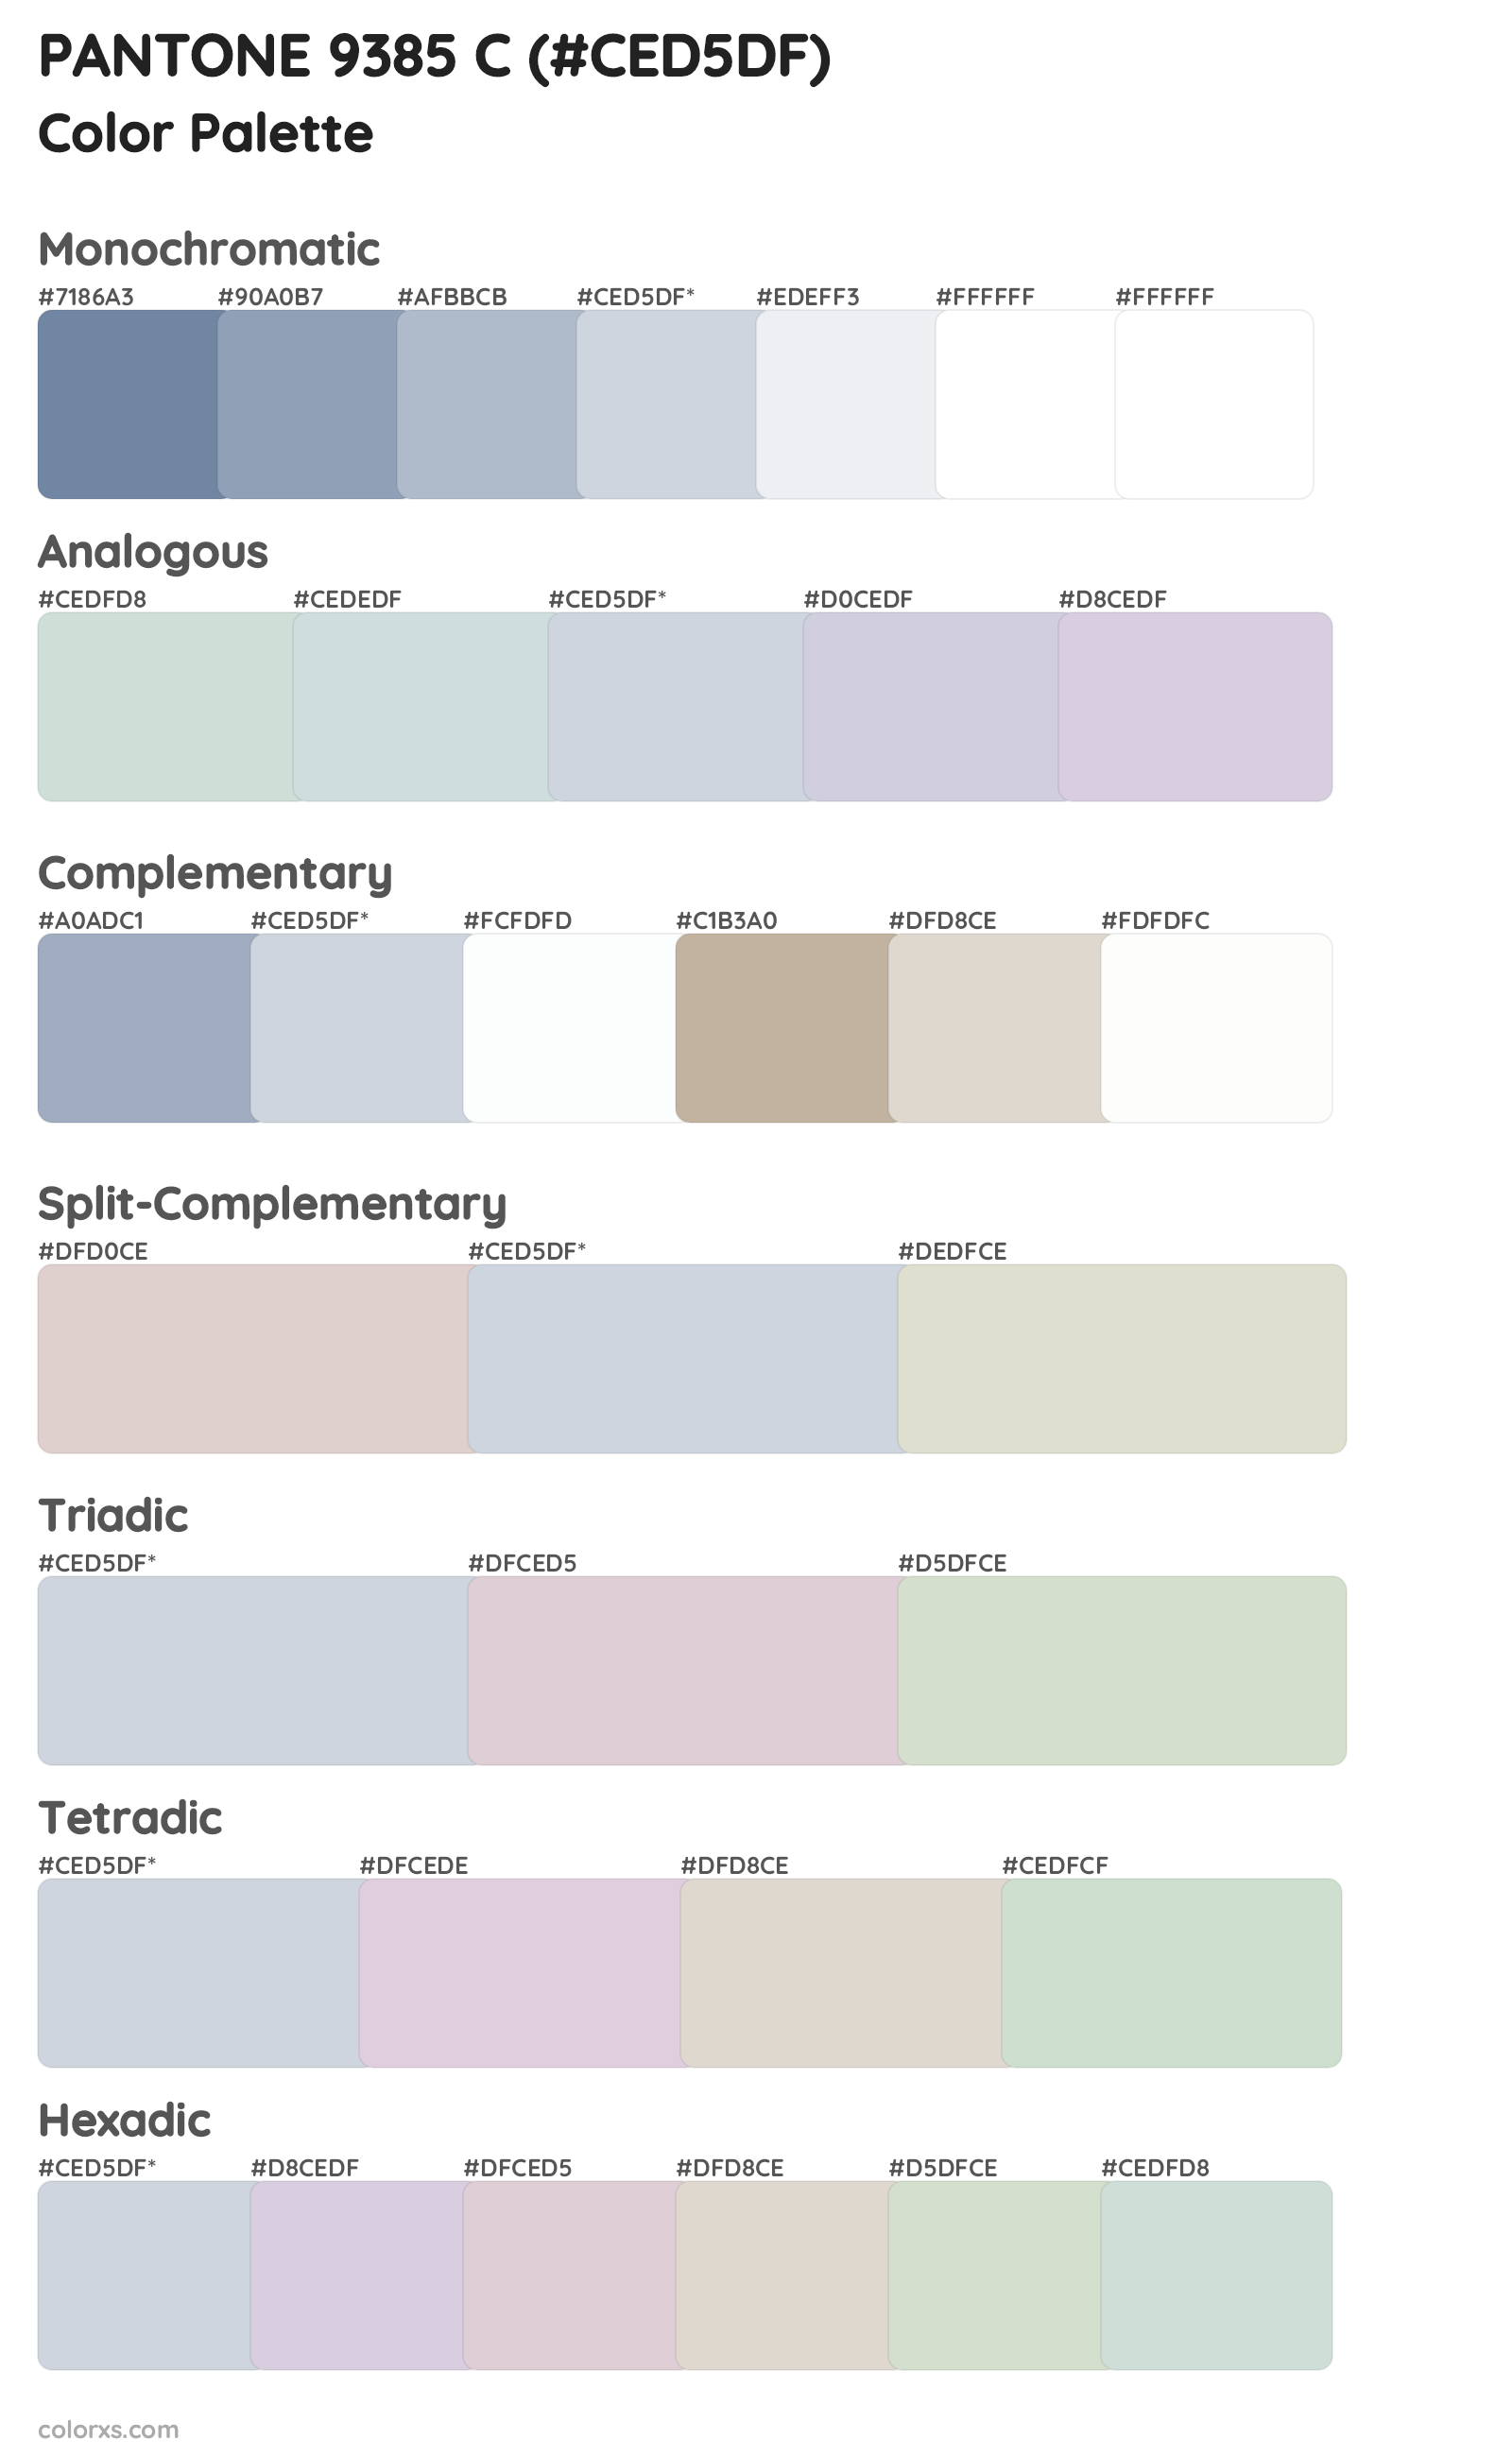 PANTONE 9385 C Color Scheme Palettes